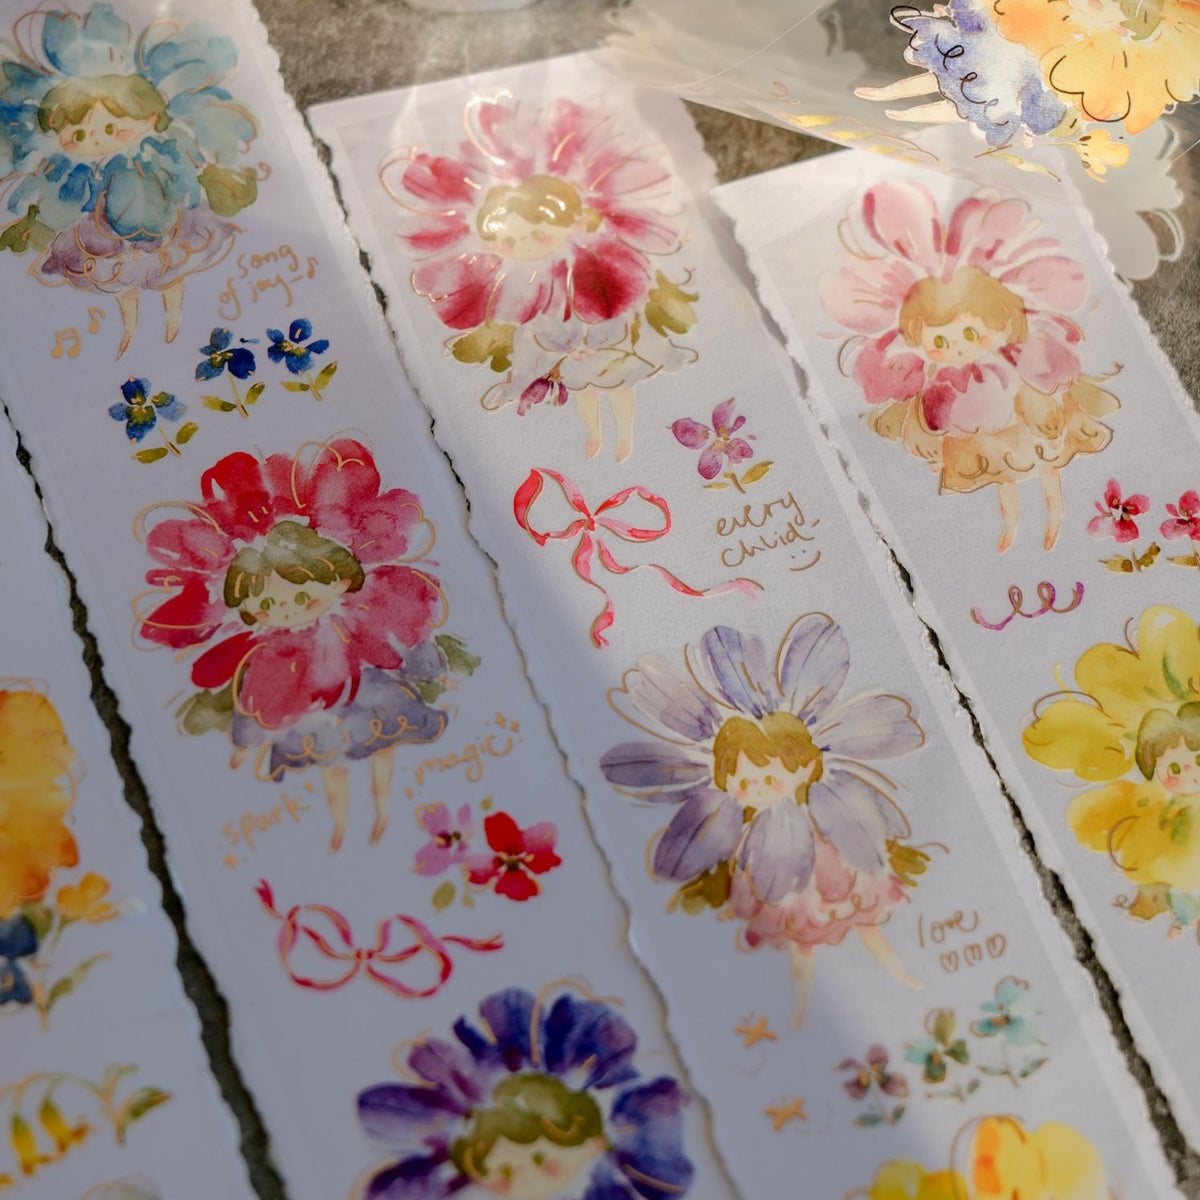 Meow Illustration - Washi Tape - Flower Girls Rose Gold Foil (PET)